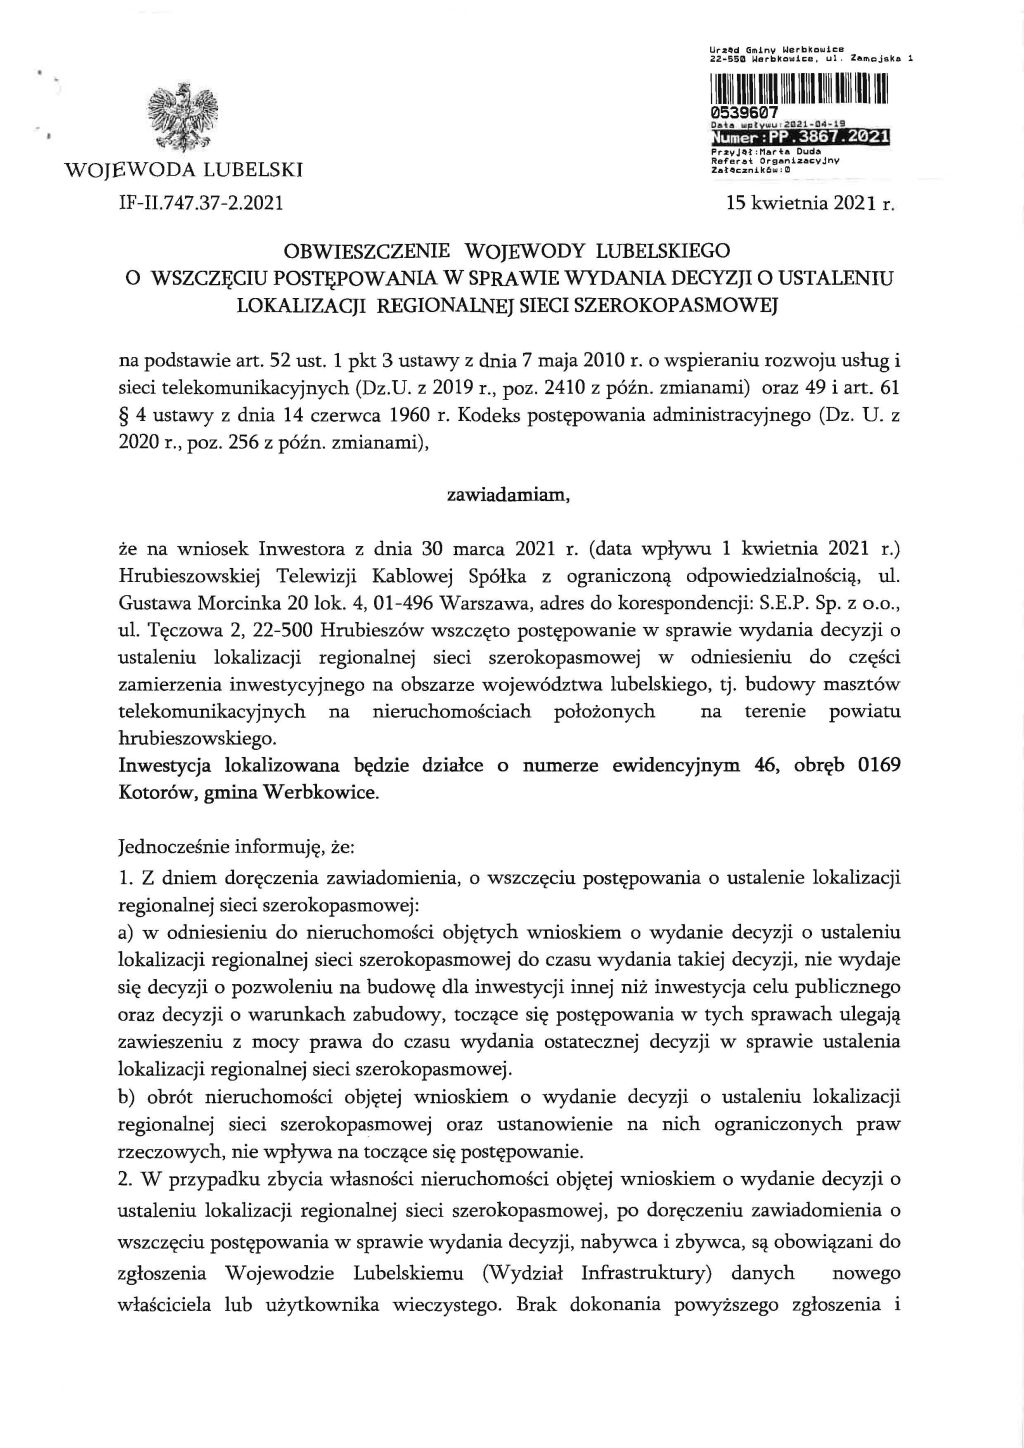 Obwieszczenie Wojewody Lubelskiego o wszczęciu postępowania w sprawie wydania decyzji o ustaleniu lokalizacji regionalnej sieci szerokopasmowej